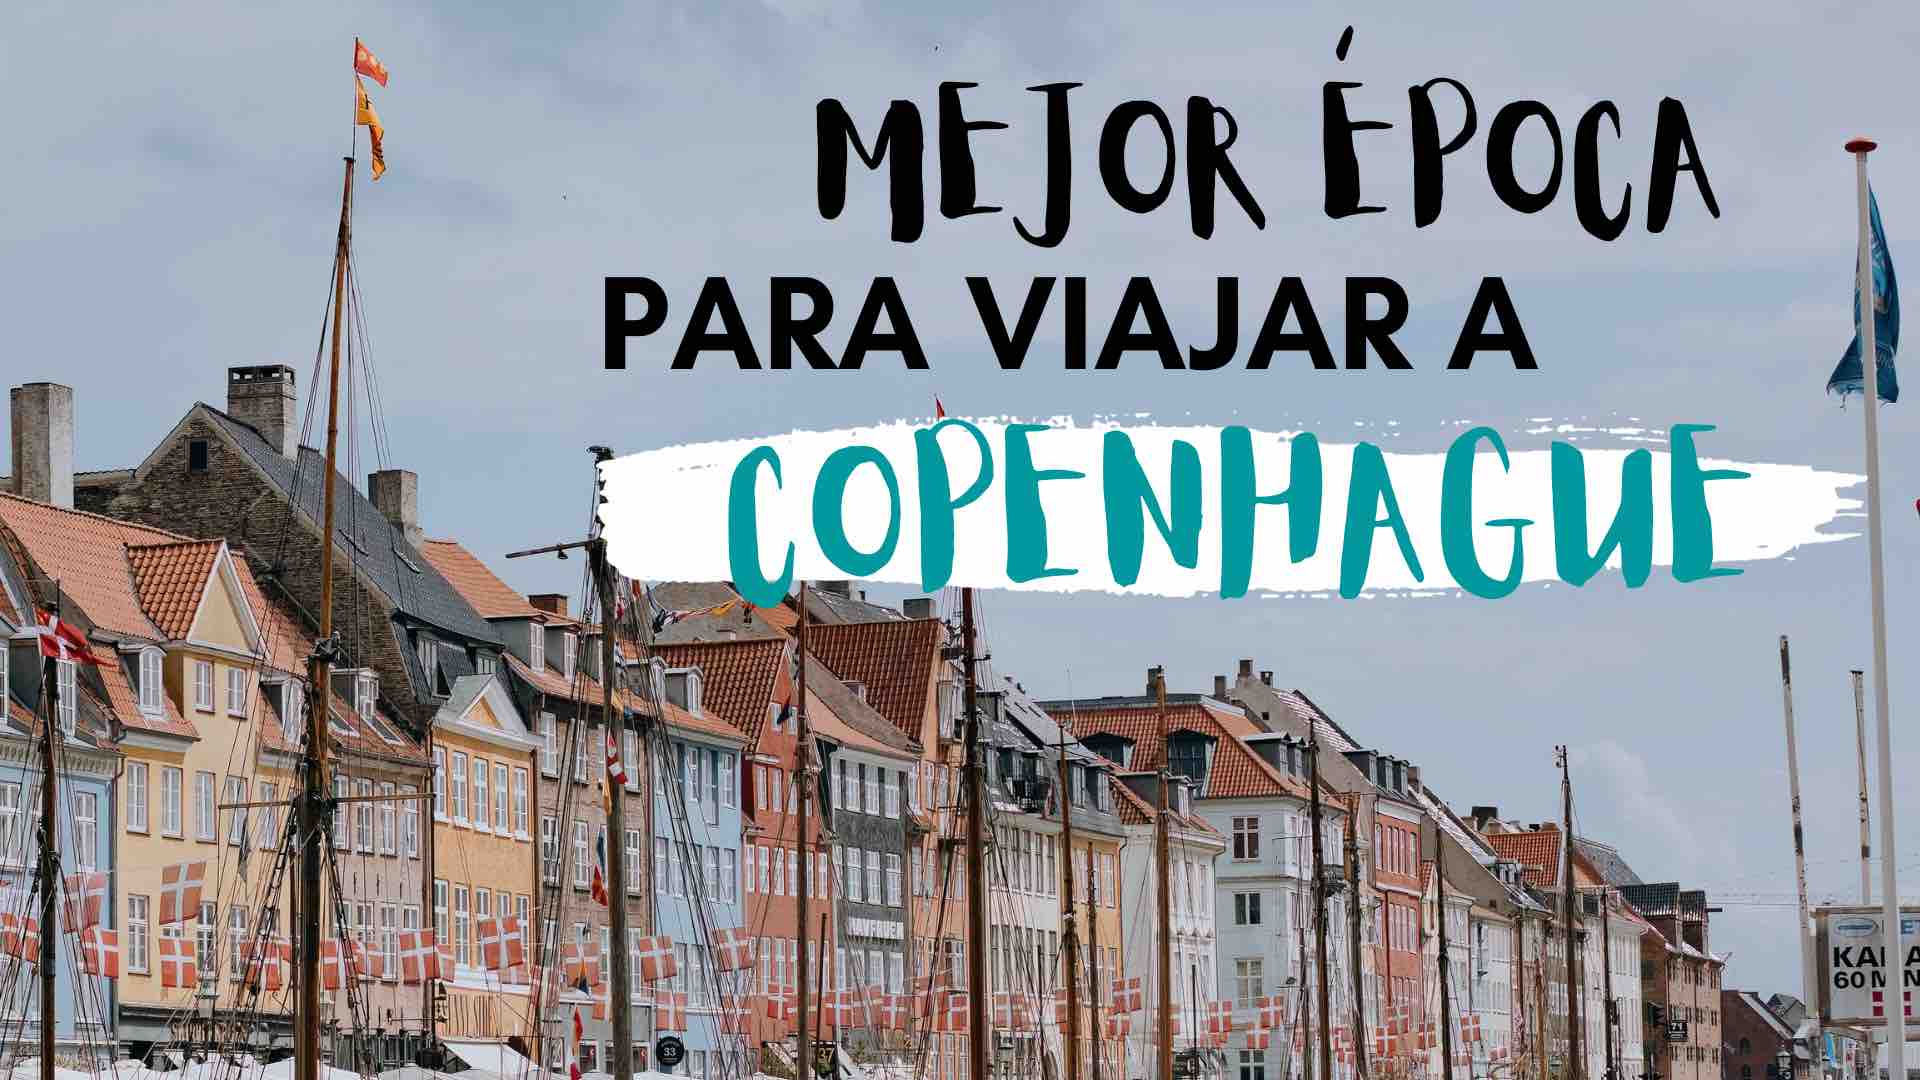 ¿Qué época es mejor para ir a Copenhague?